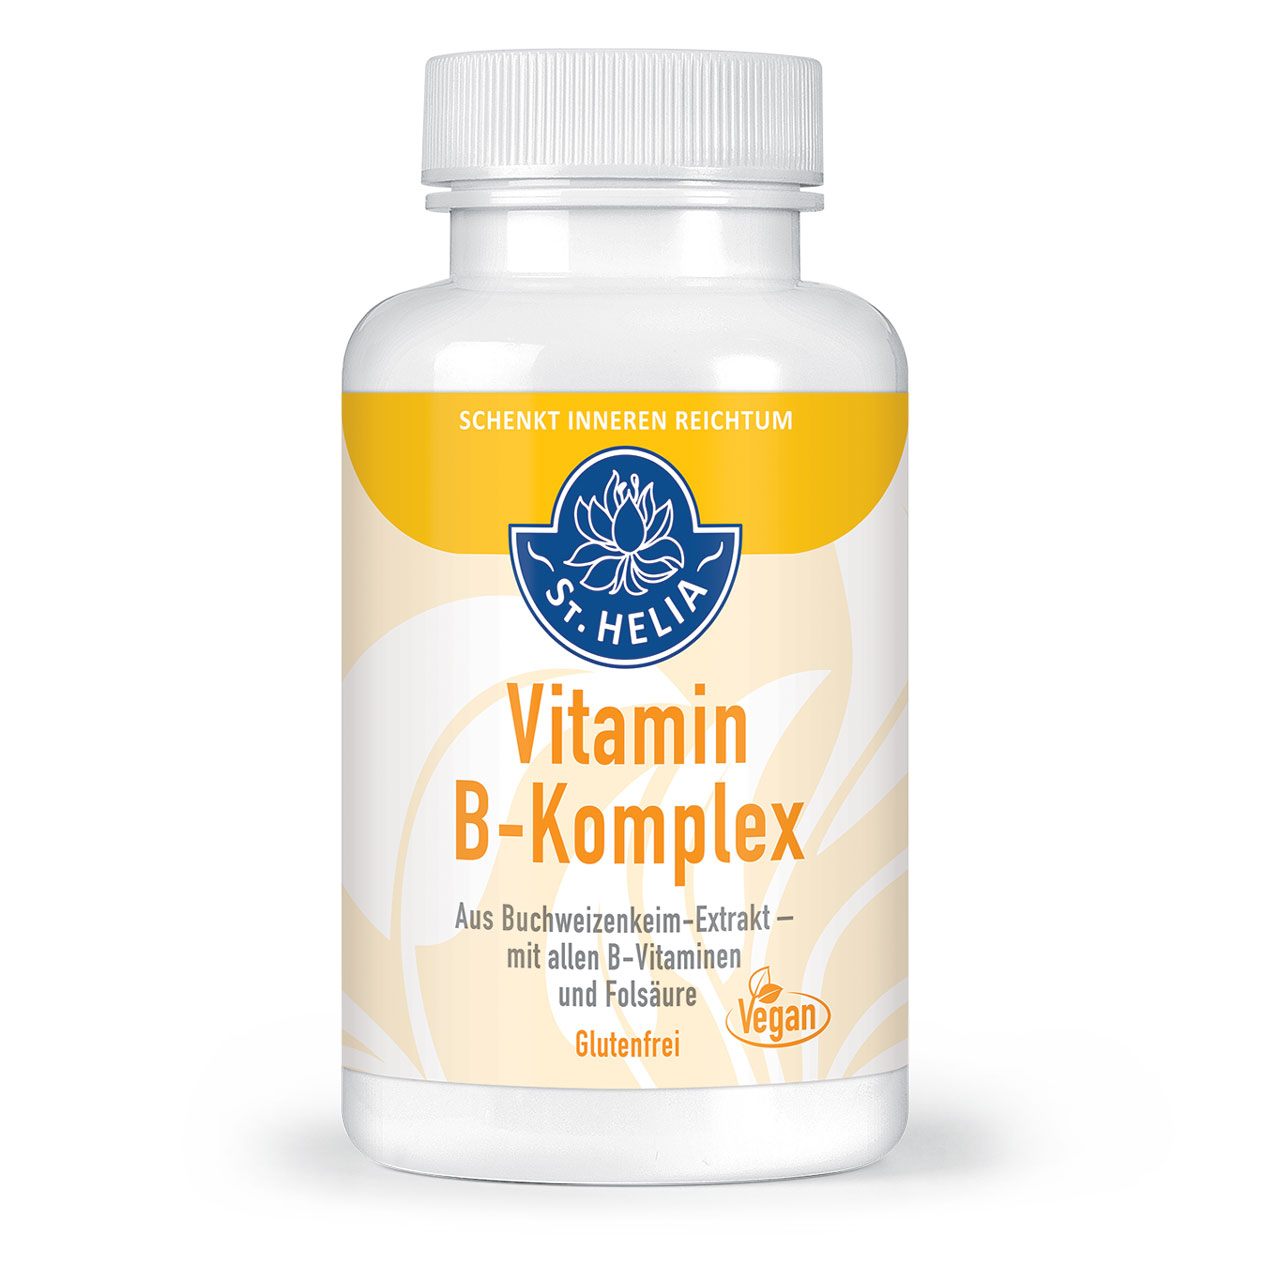 Vitamin B-Komplex aus Buchweizen von St. Helia beinhaltet 90 Kapseln